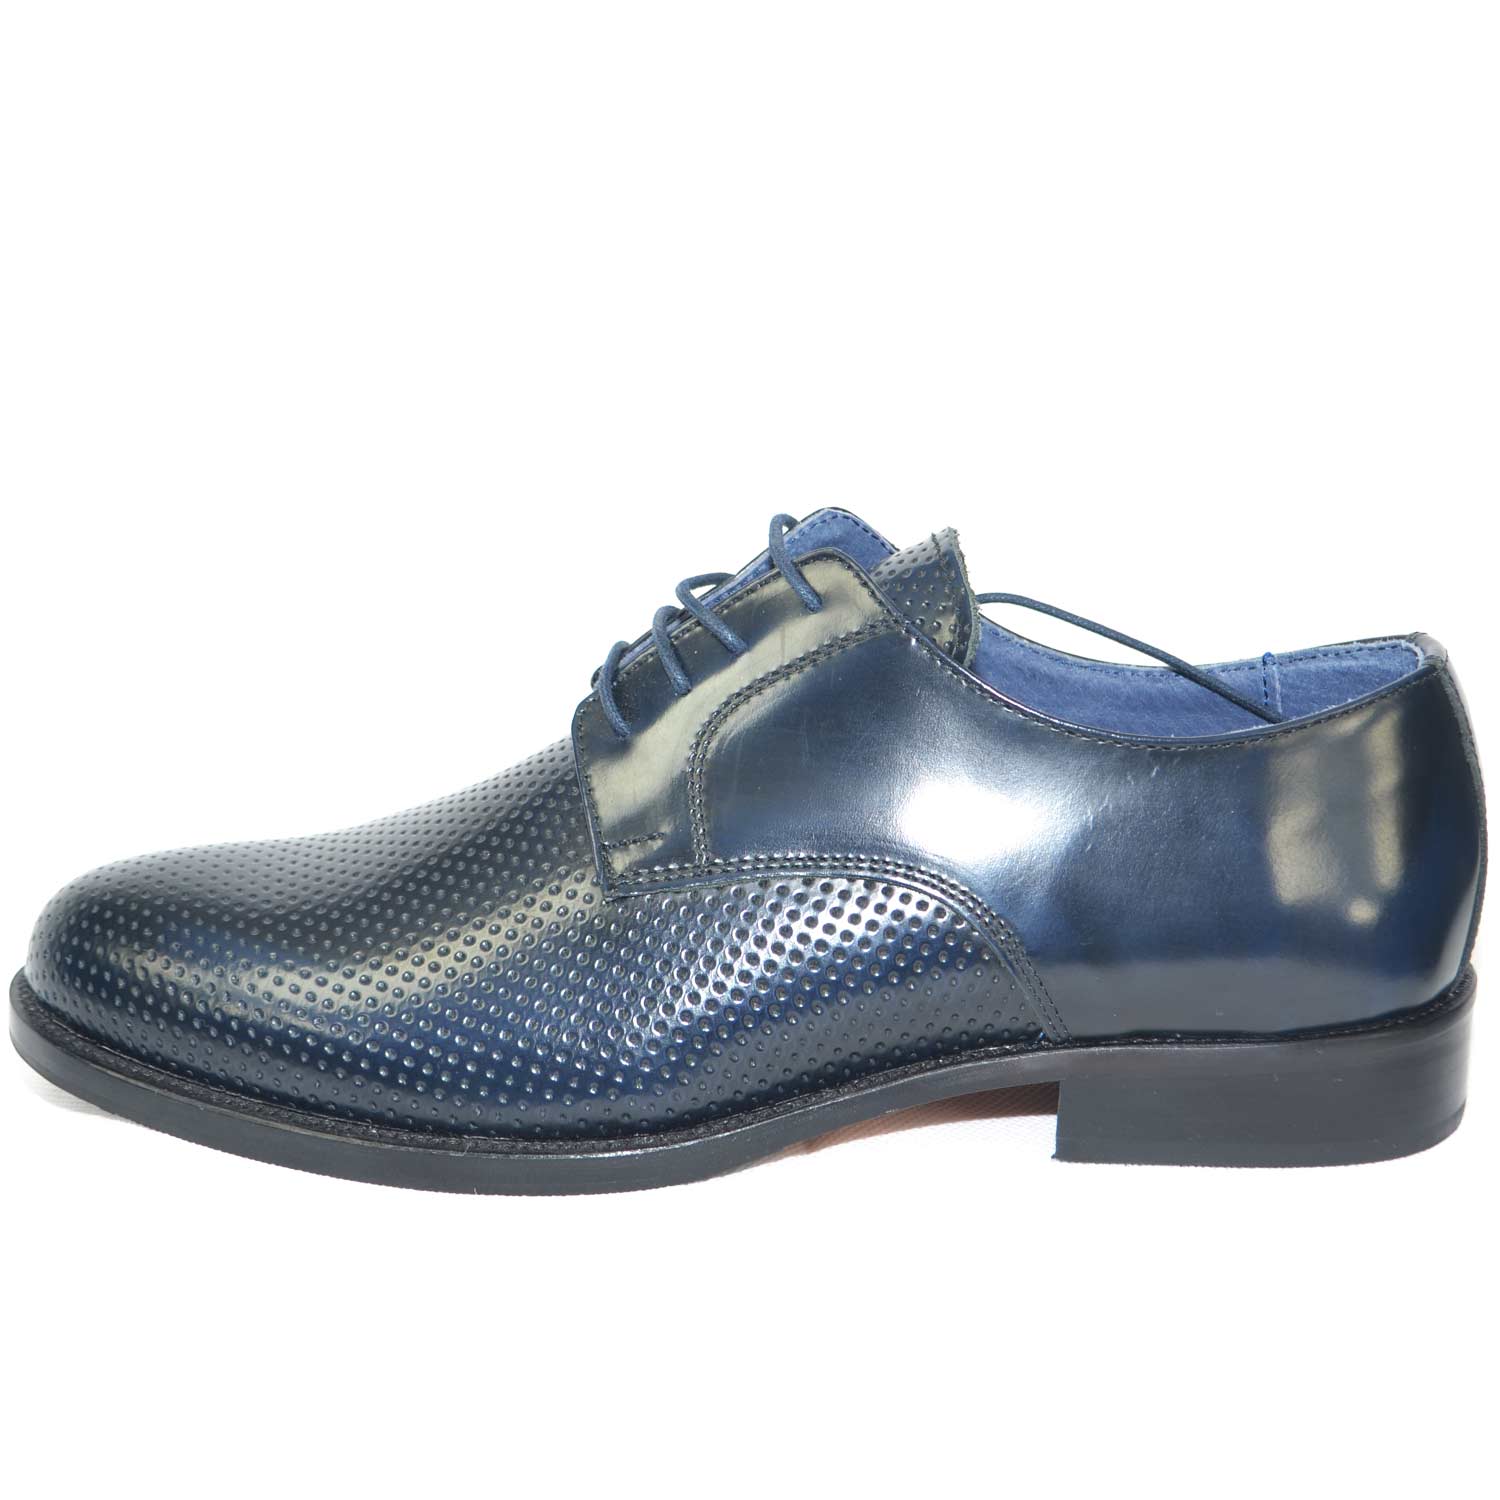 scarpe classiche cerimonia elegante uomo blu lucido abrasivato vera pelle  made i | eBay